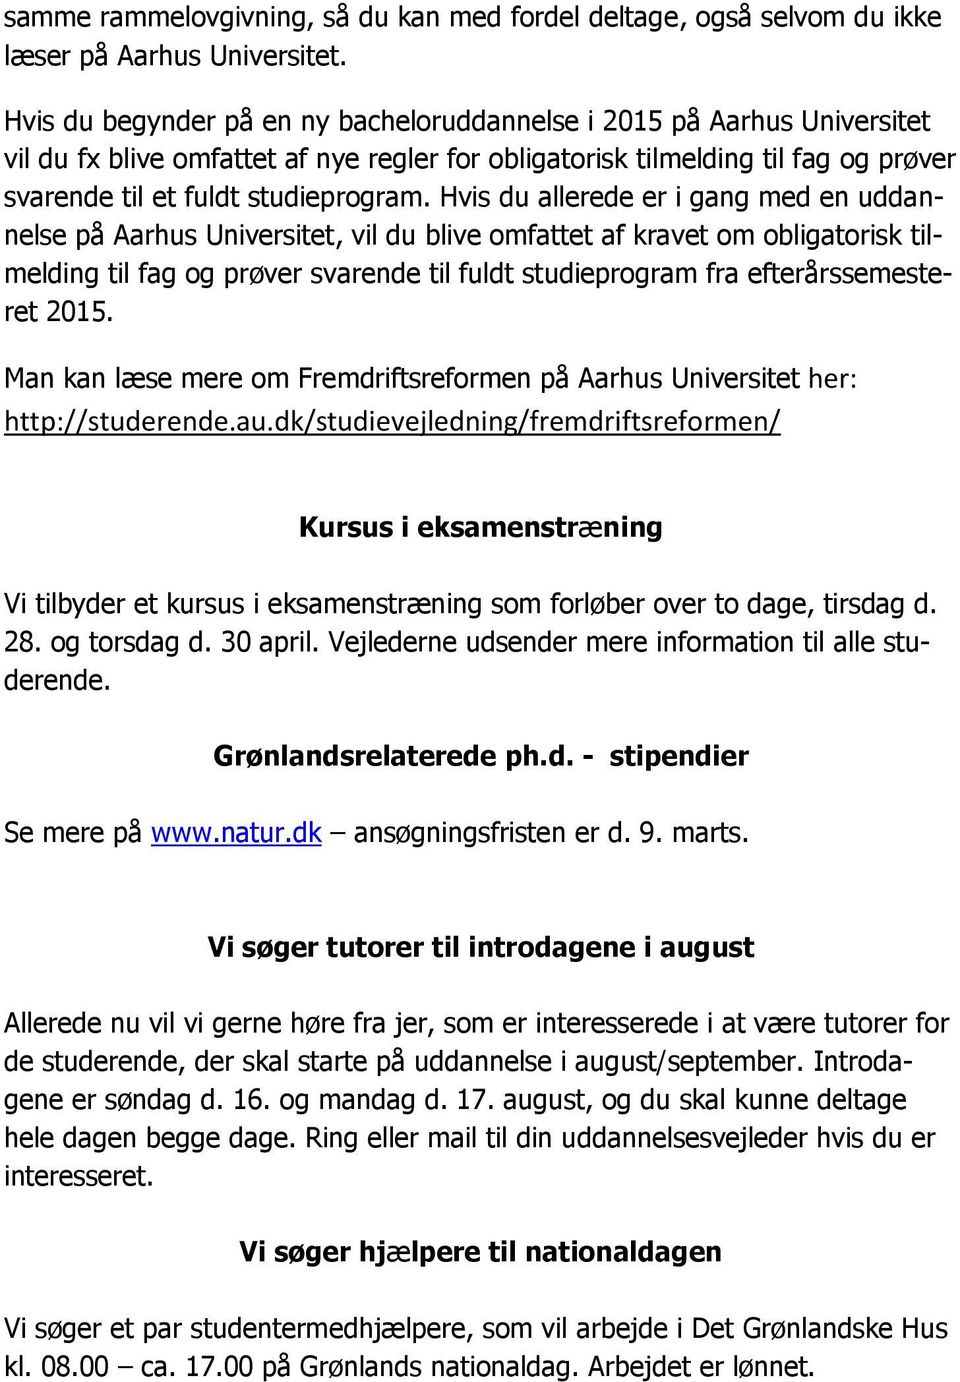 Hvis du allerede er i gang med en uddannelse på Aarhus Universitet, vil du blive omfattet af kravet om obligatorisk tilmelding til fag og prøver svarende til fuldt studieprogram fra